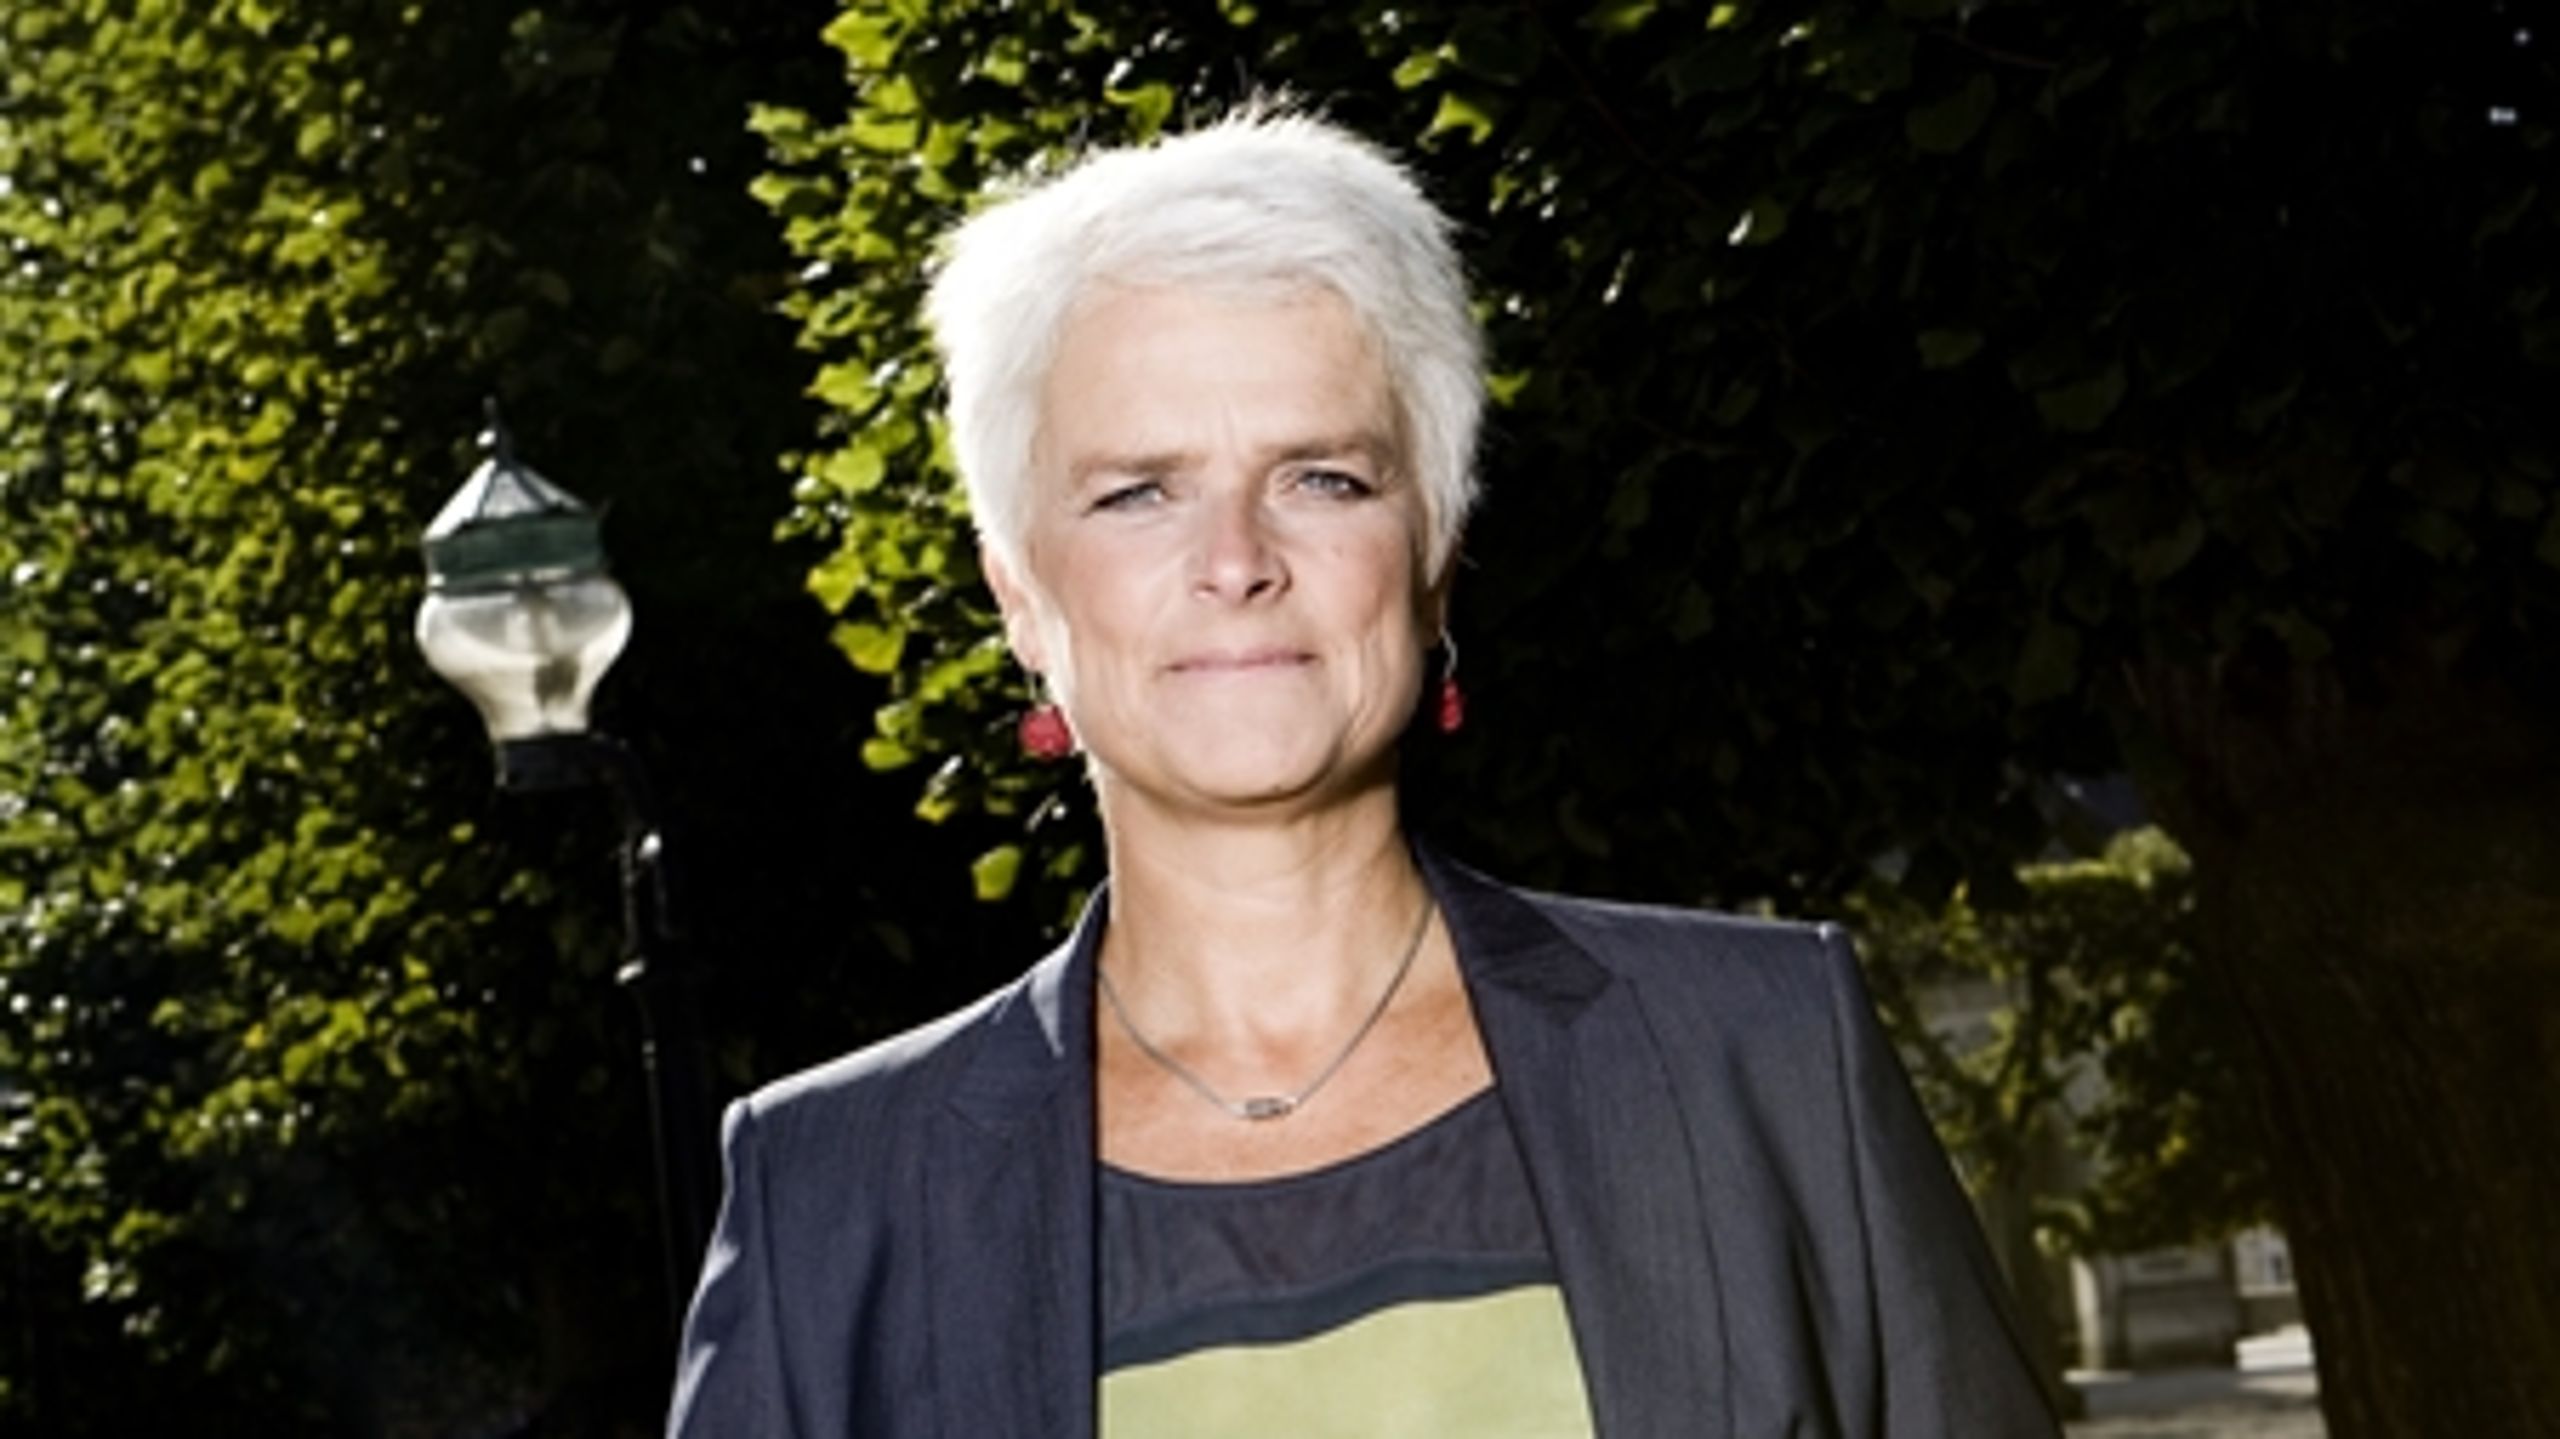 SF's tidligere formand, Annette Vilhelmsen, vil have et større politisk fokus på kulturen.